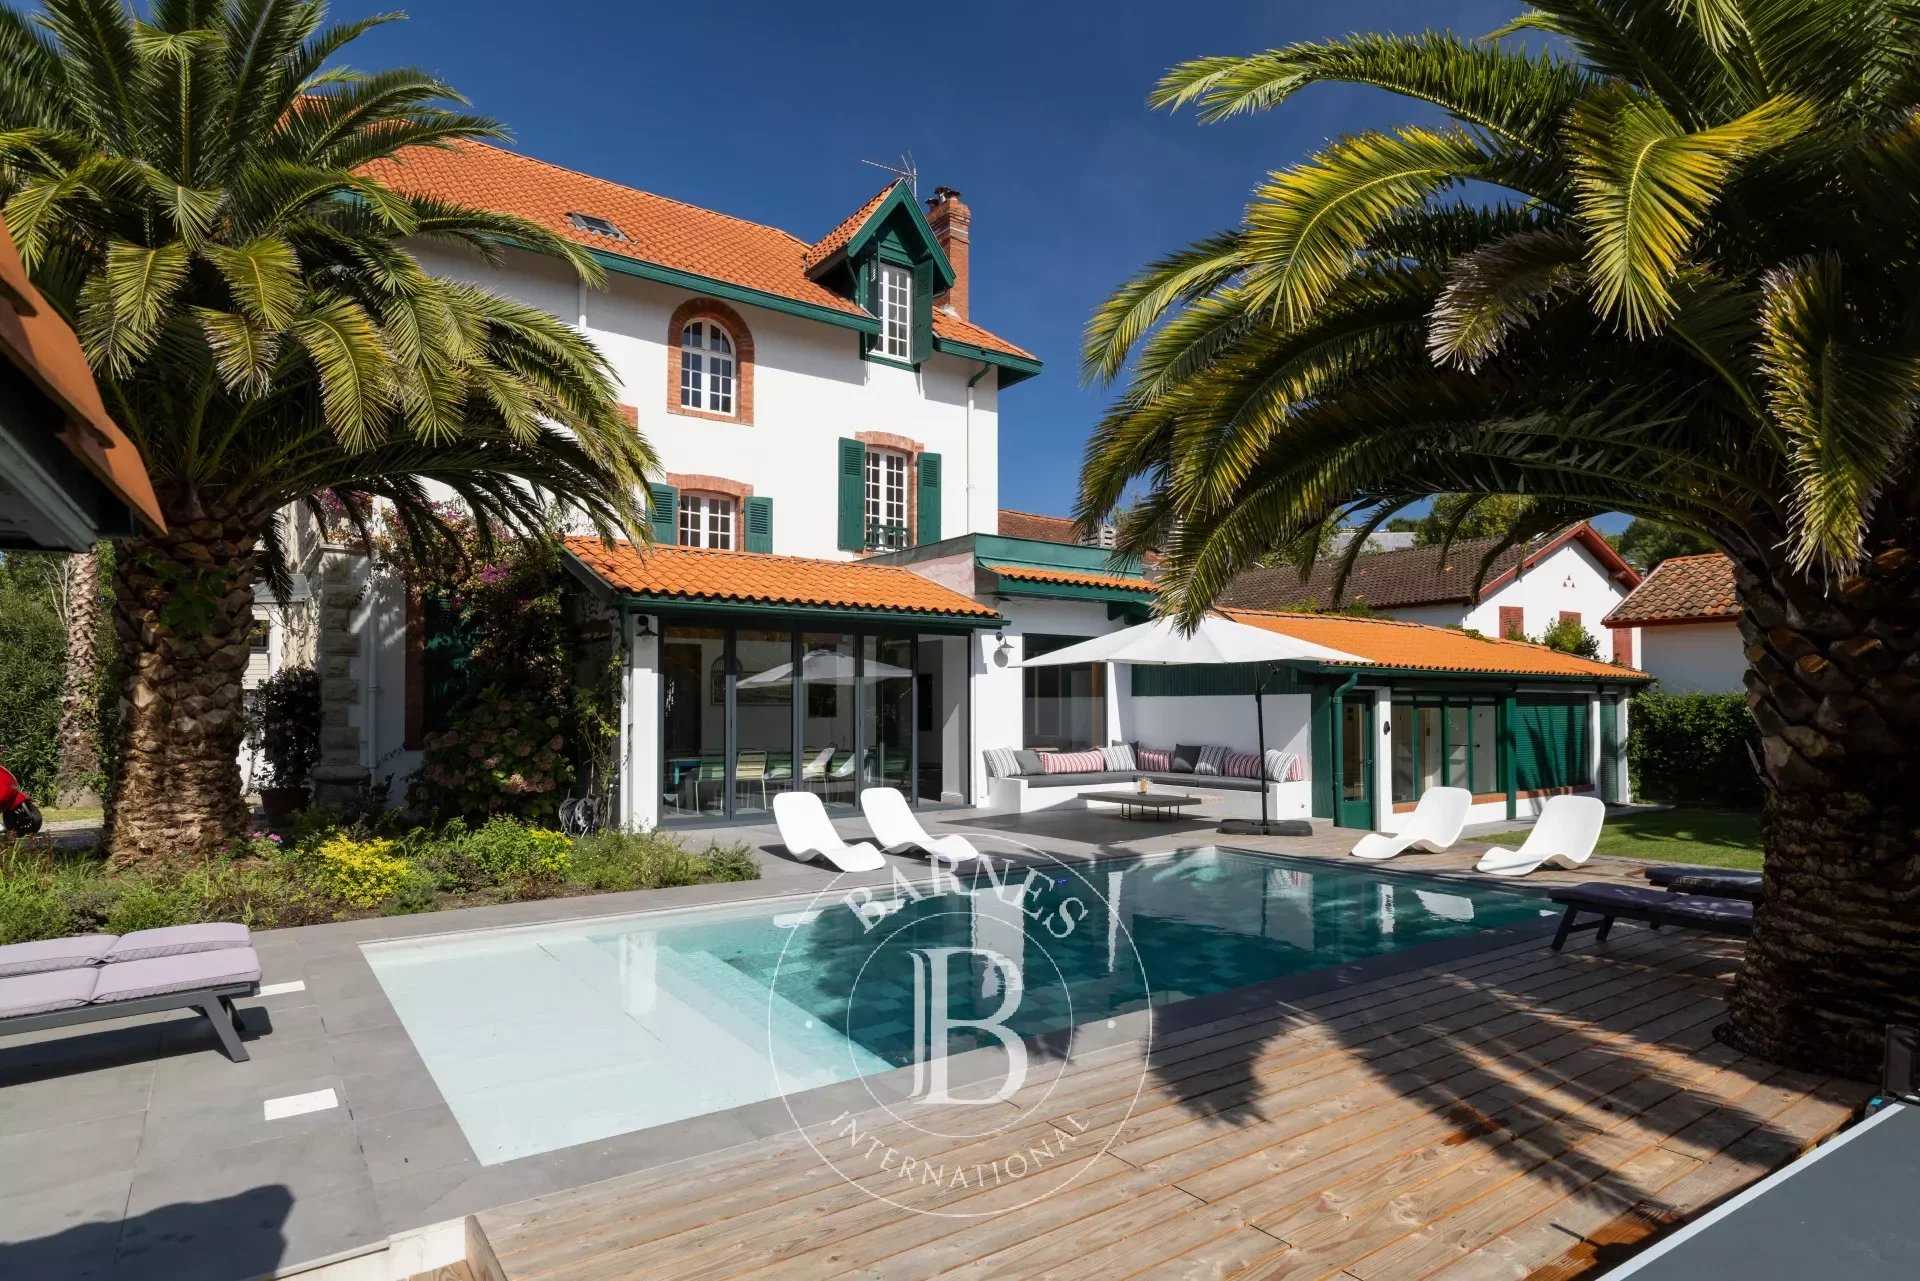 ÉMERAUDE - Superbe maison de 6 chambres avec piscine, ping pong, sauna à 5min de la plage de Biarritz picture 20